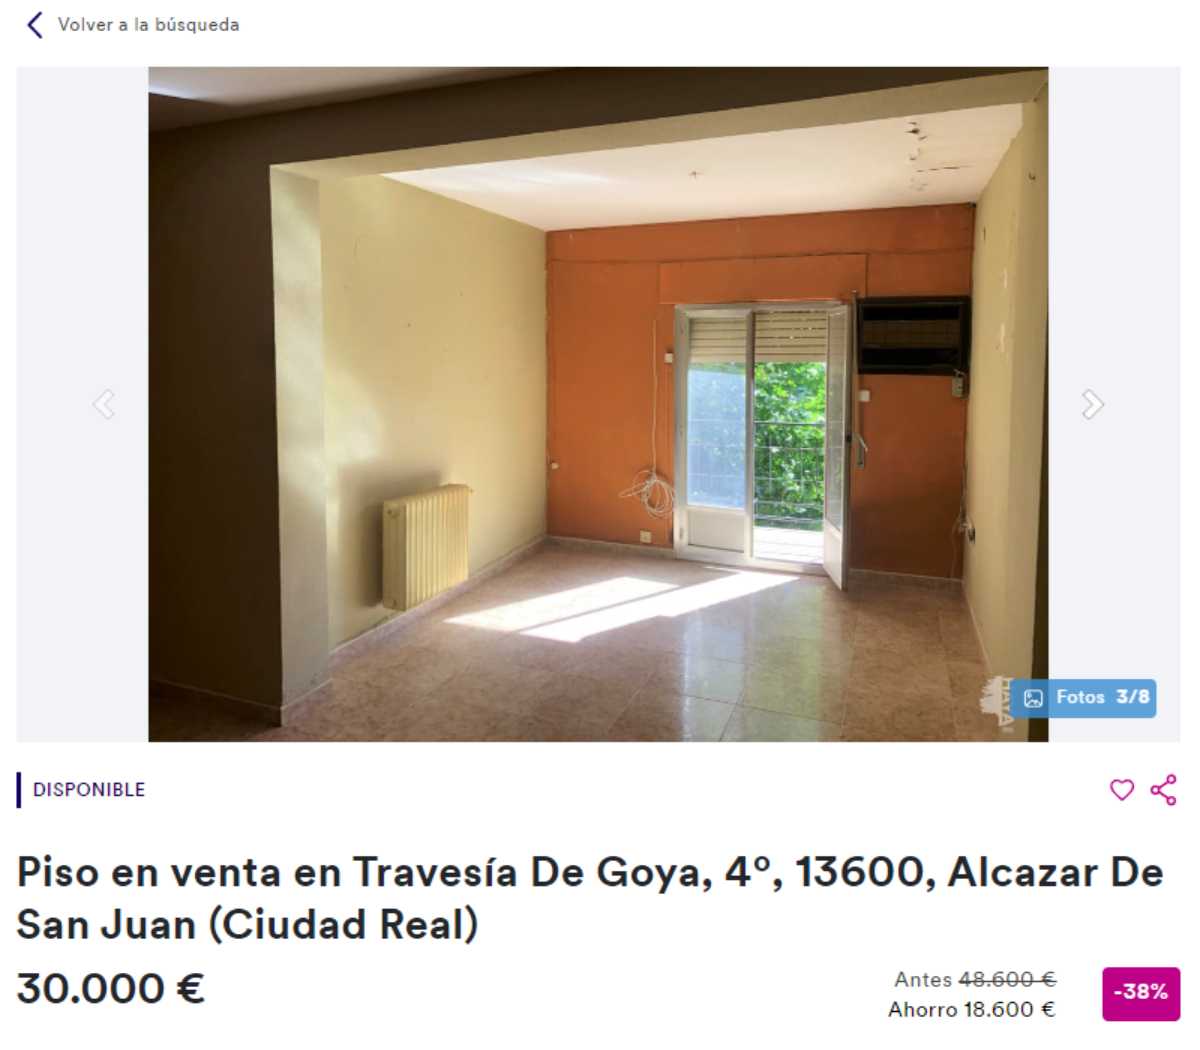 Piso en venta en Alcázar de San Juan por un precio de 30.000 euros 